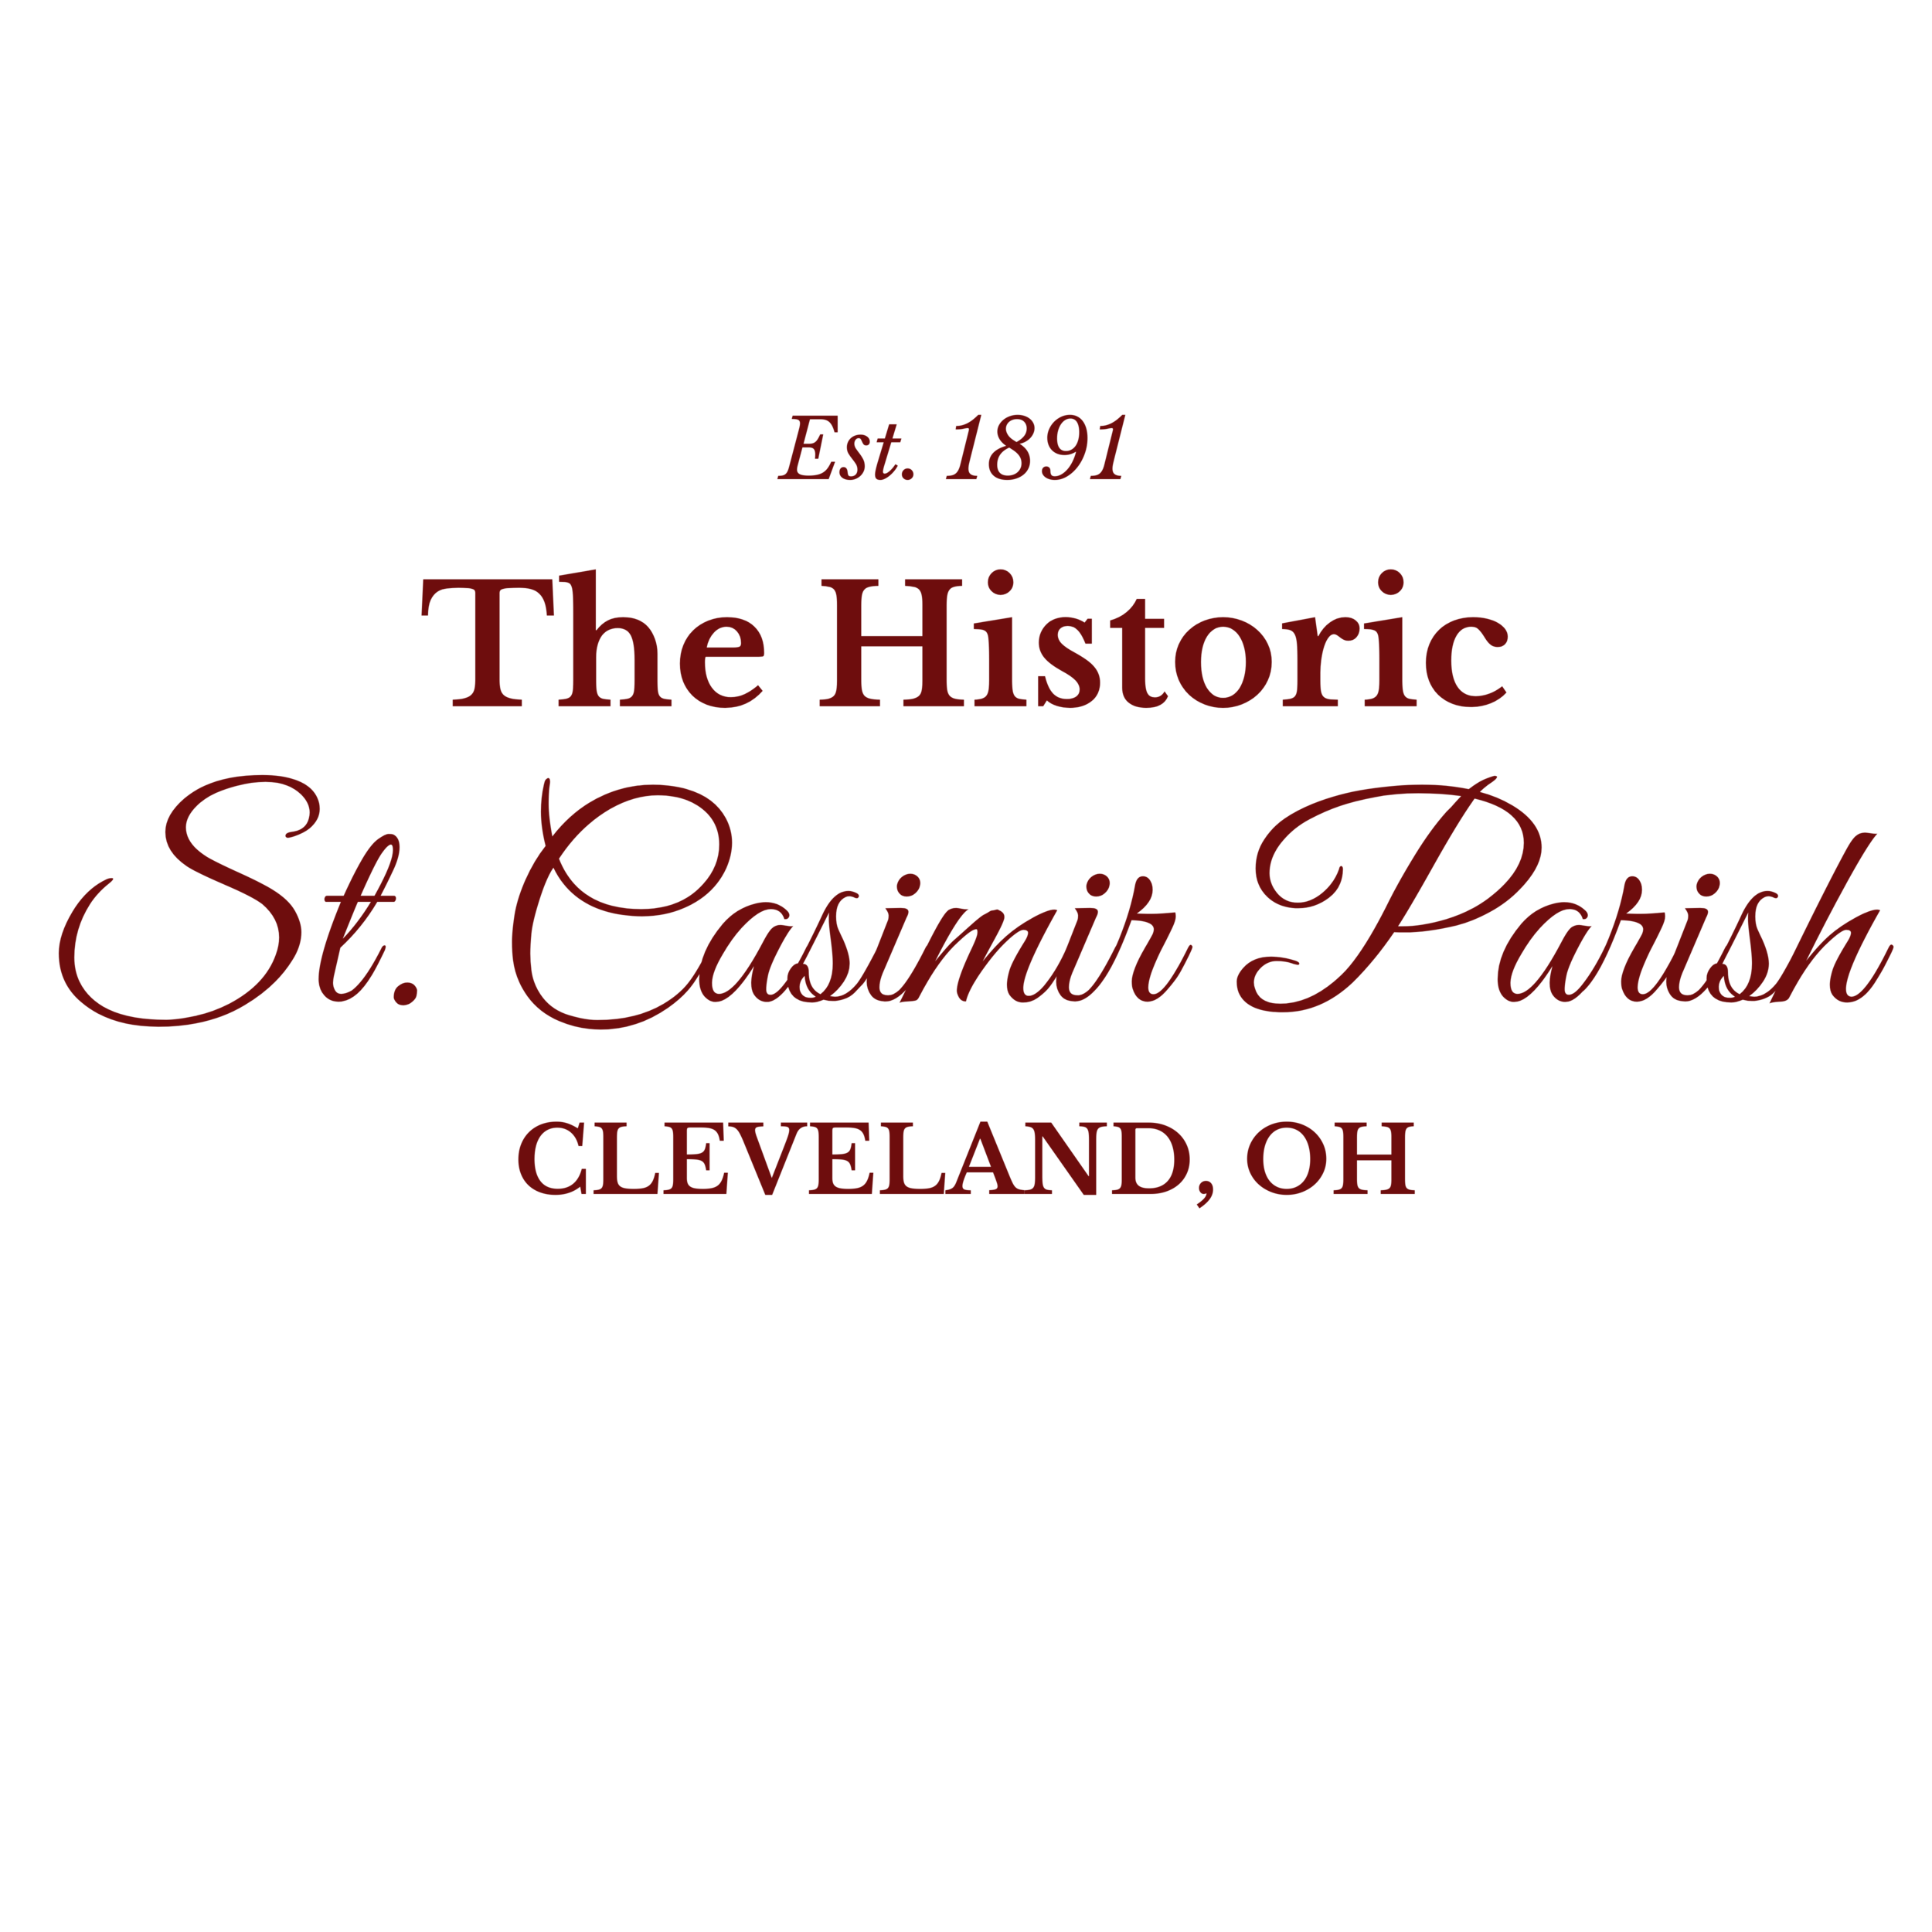 The Historic St. Casimir Parish